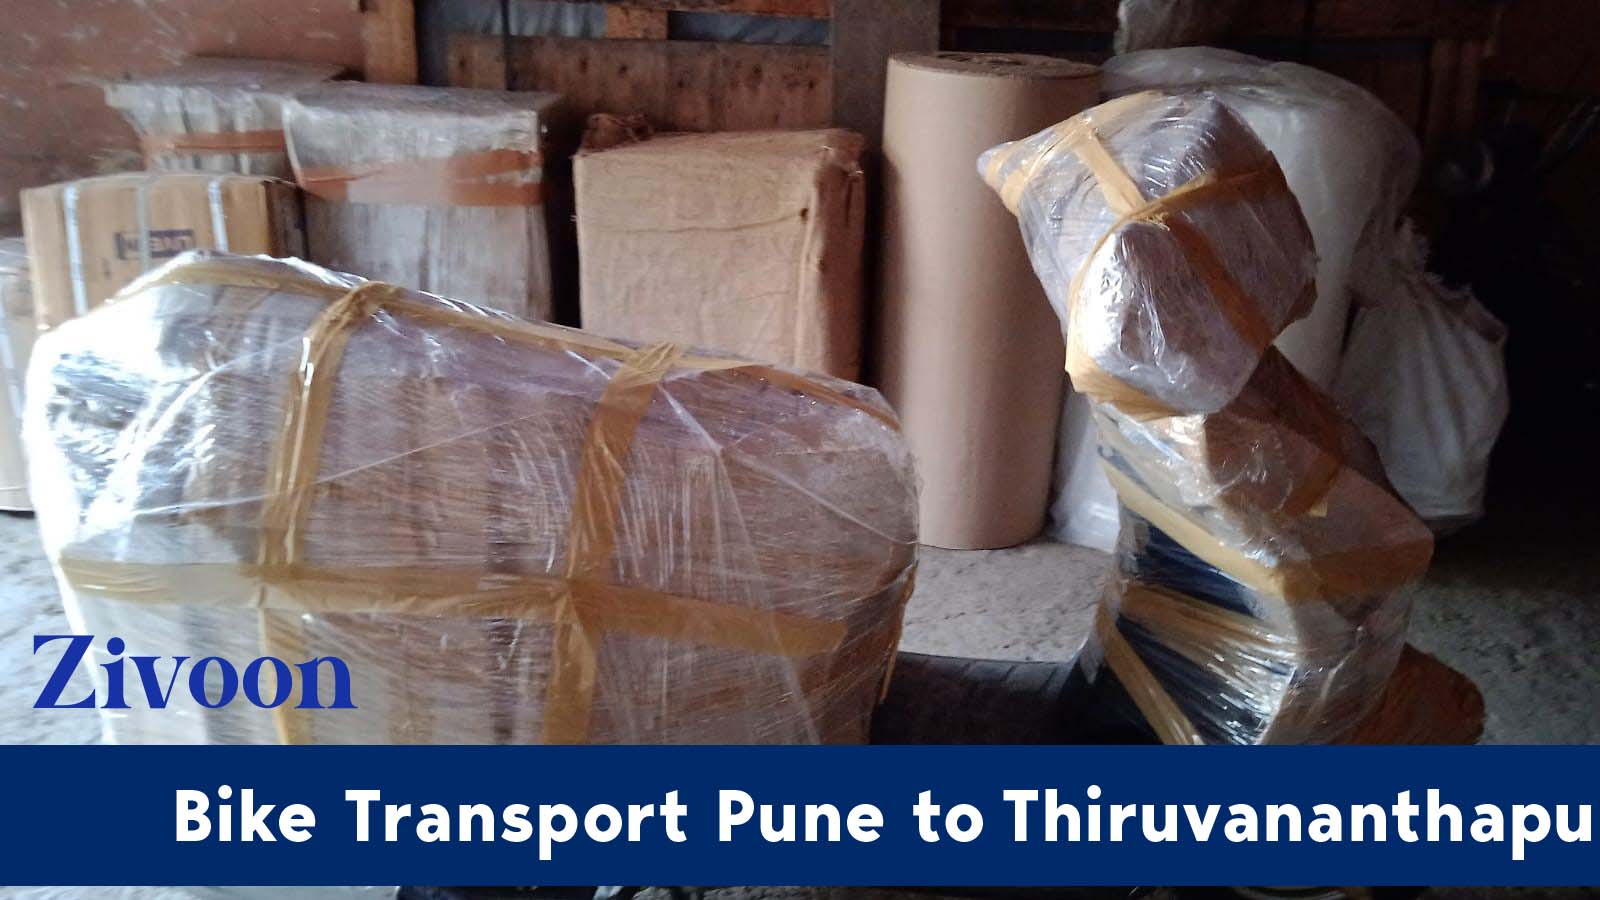 Bike Transport Service Pune to Thiruvananthapuram